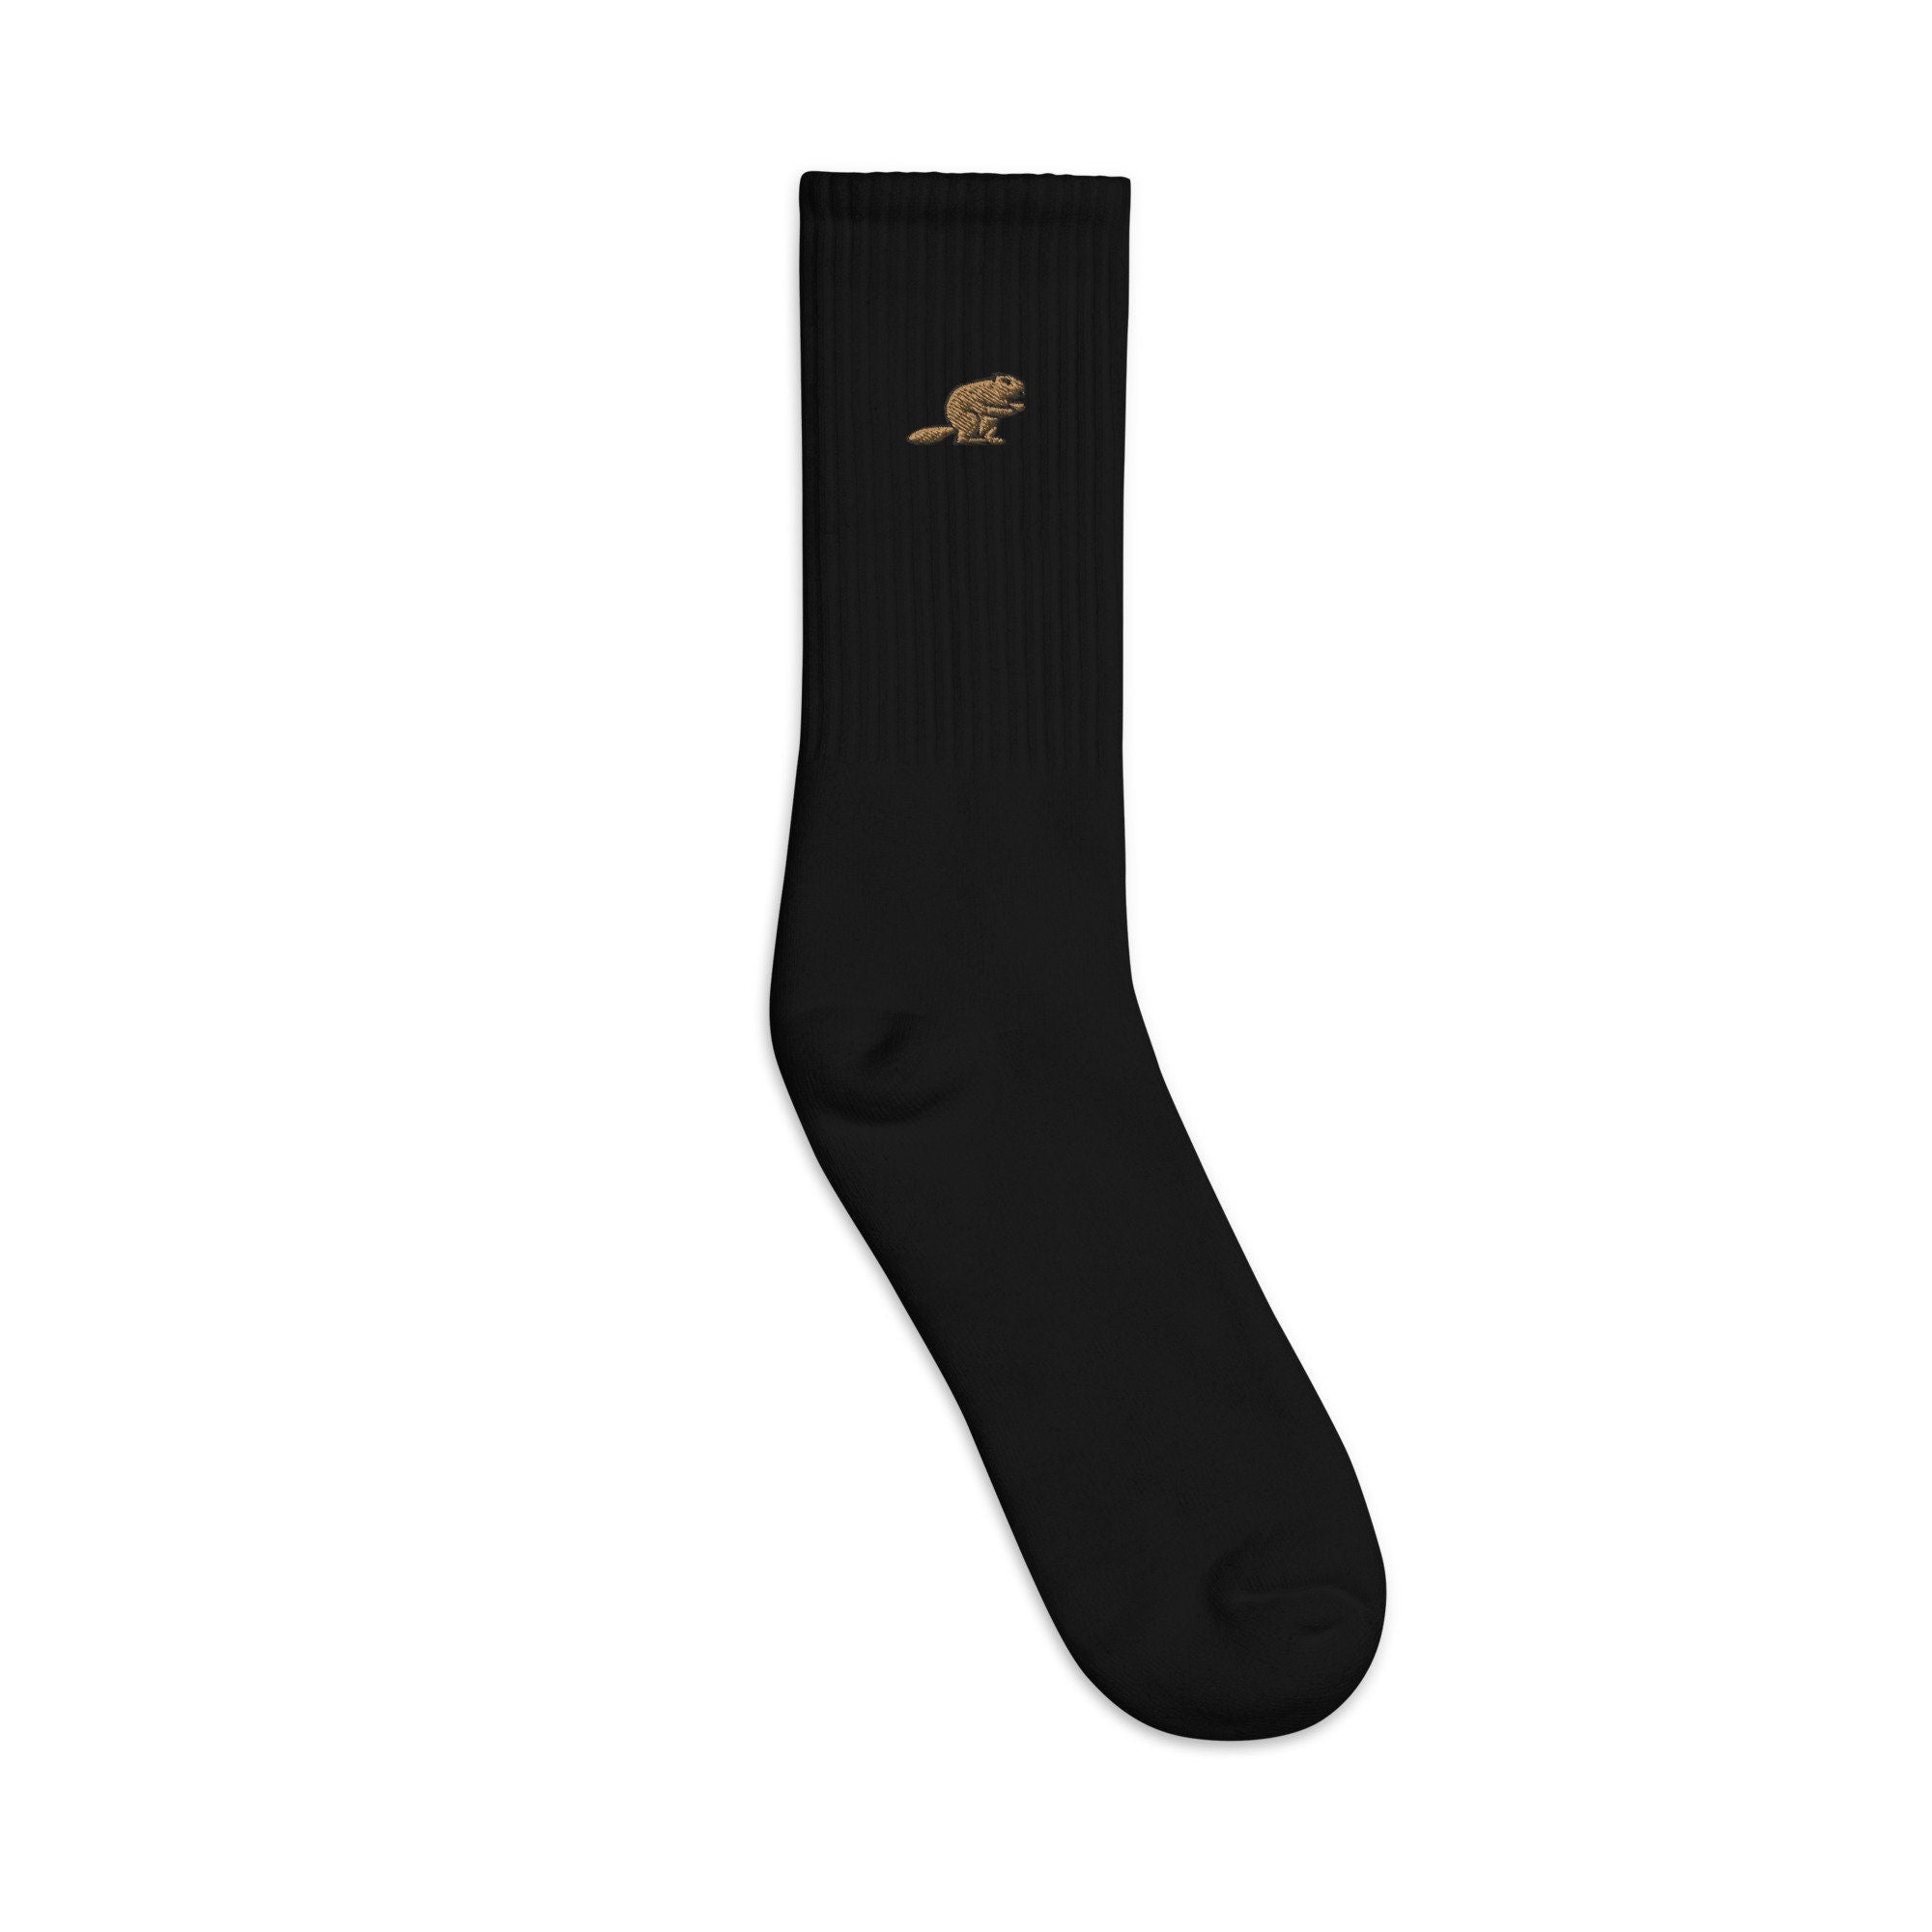 Beaver Embroidered Socks, Premium Embroidered Socks, Long Socks Gift - Multiple Colors